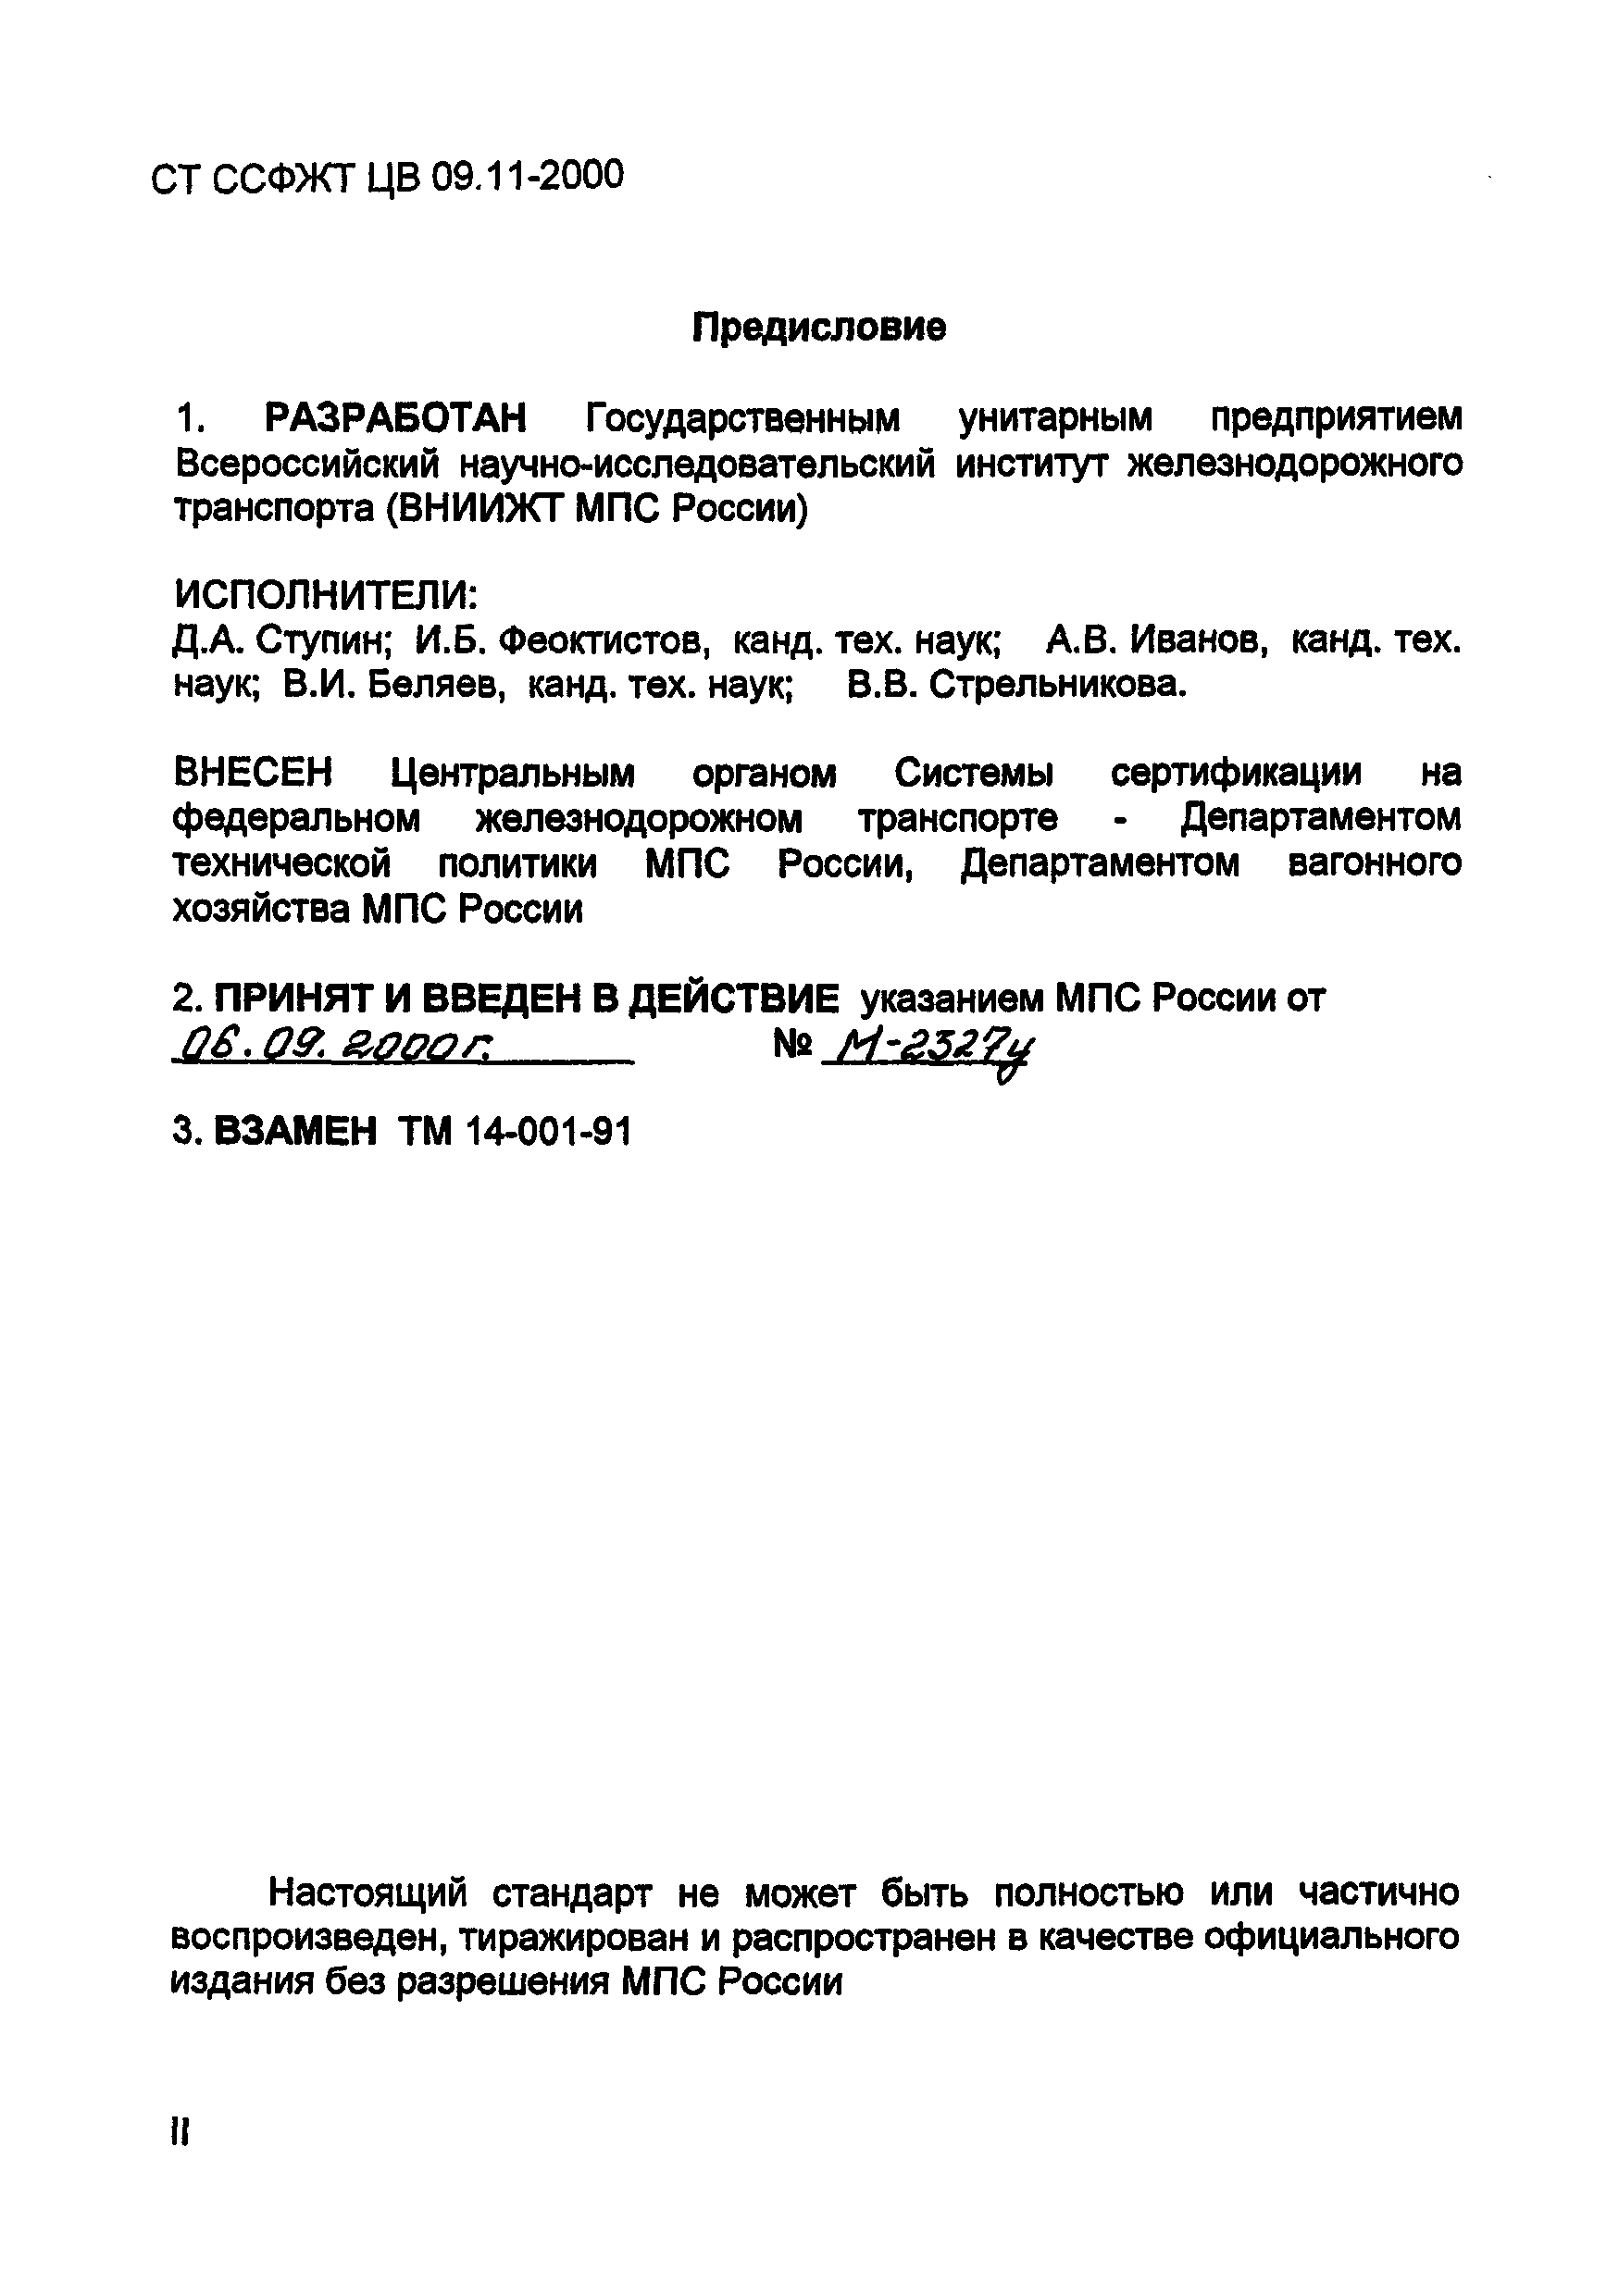 СТ ССФЖТ ЦВ 09.11-2000